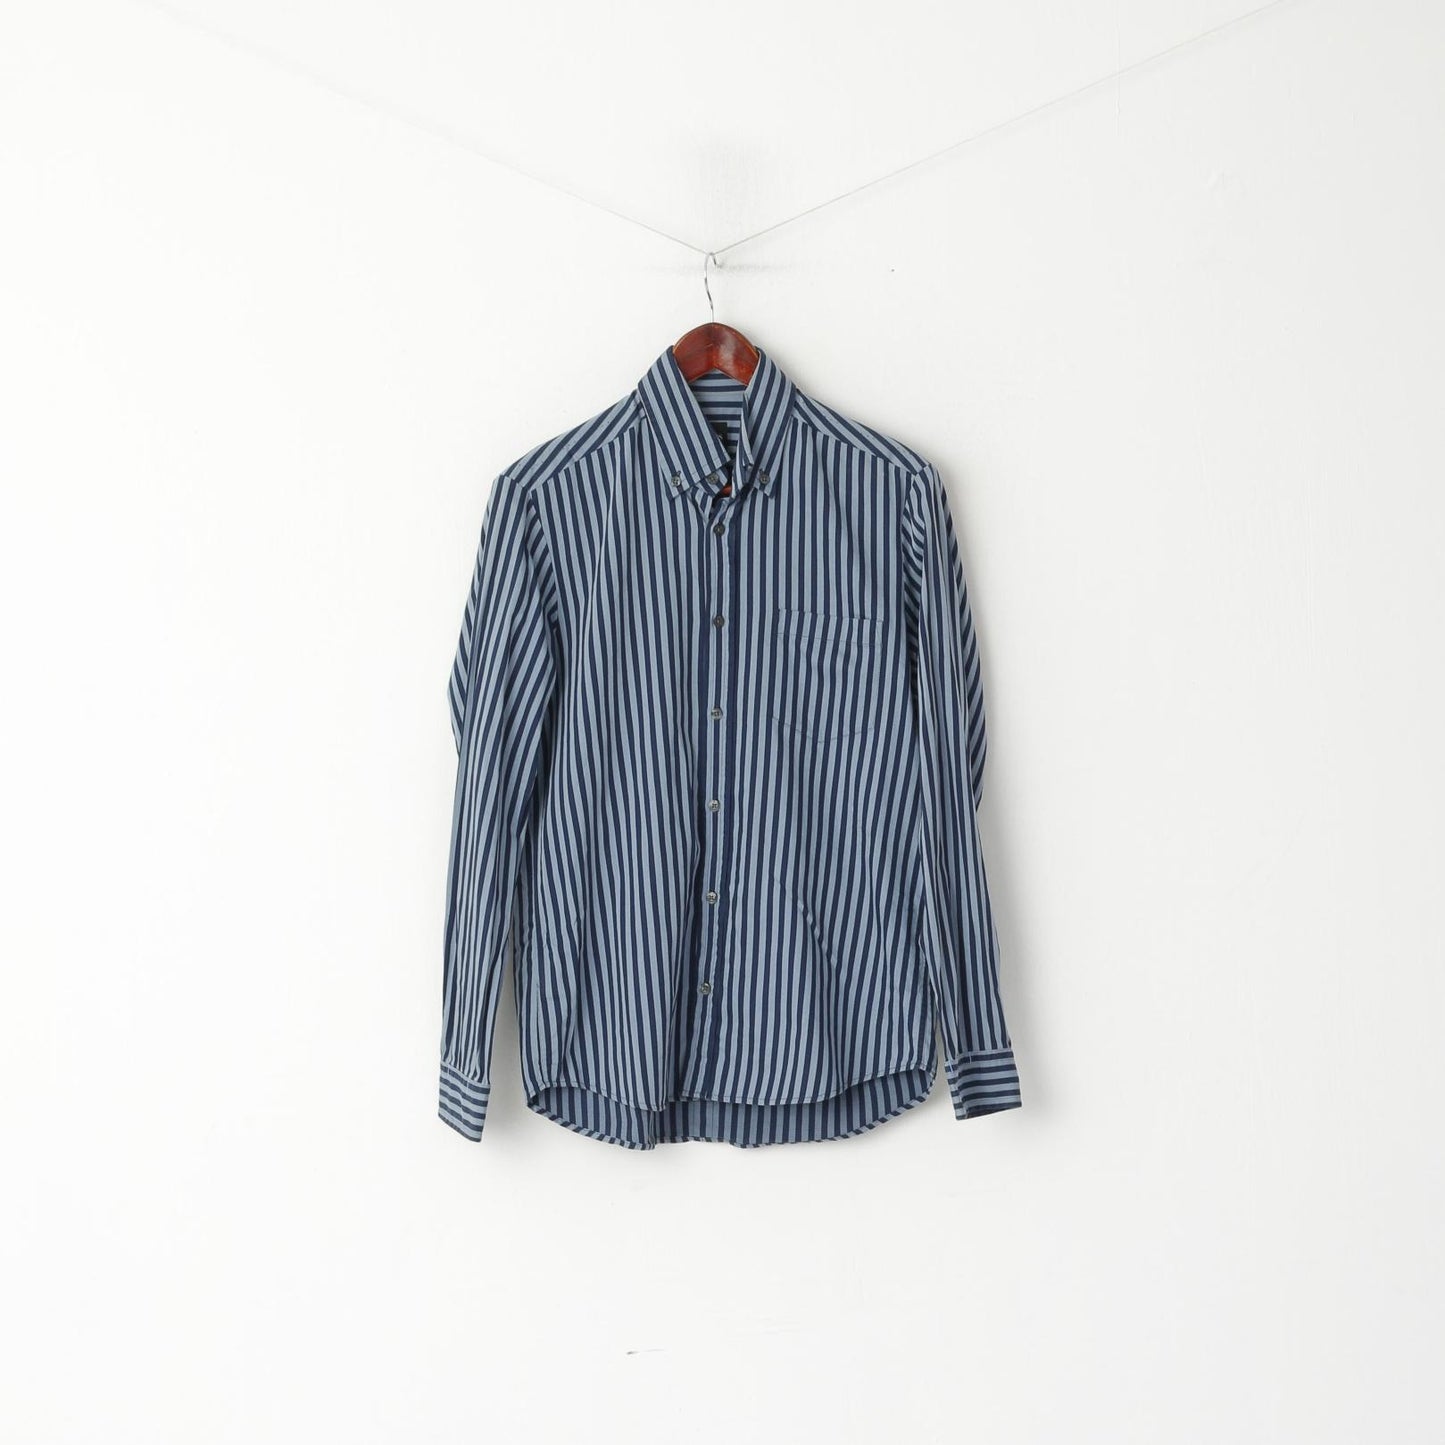 Hugo Boss Camicia casual da uomo M. Top a maniche lunghe con colletto button down in cotone a righe blu